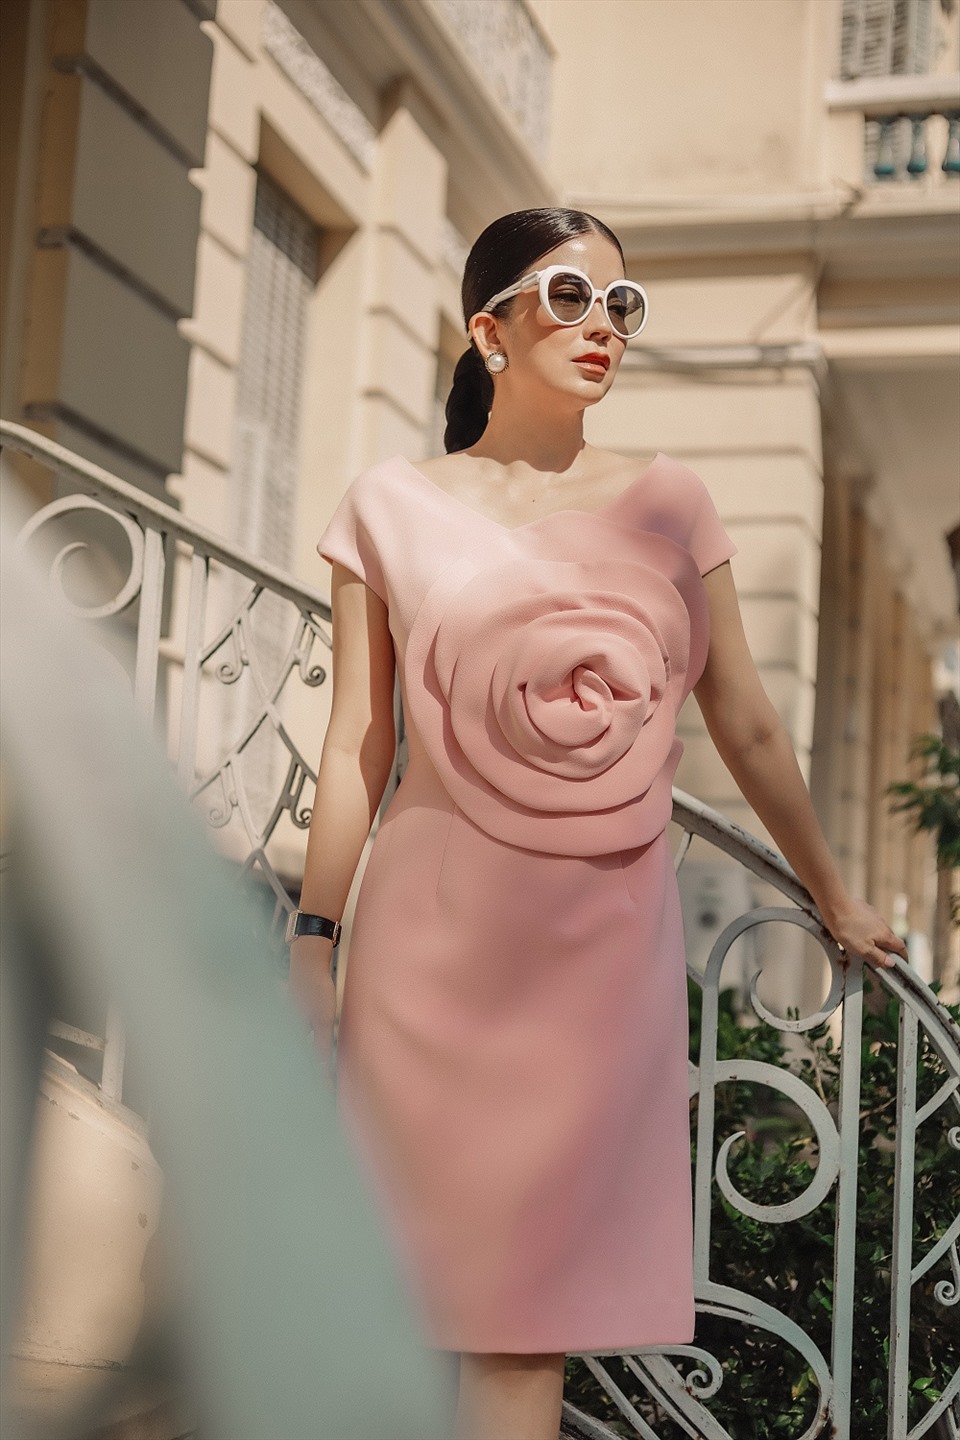 Những kiểu trang phục của Angela Ngô có thể “mix & match” với nhau một cách dễ dàng, điều này giúp thương hiệu chinh phục trọn vẹn khách hàng và được bình chọn là thương hiệu xứng đáng được nữ giới đầu tư. Ảnh: NSCC.